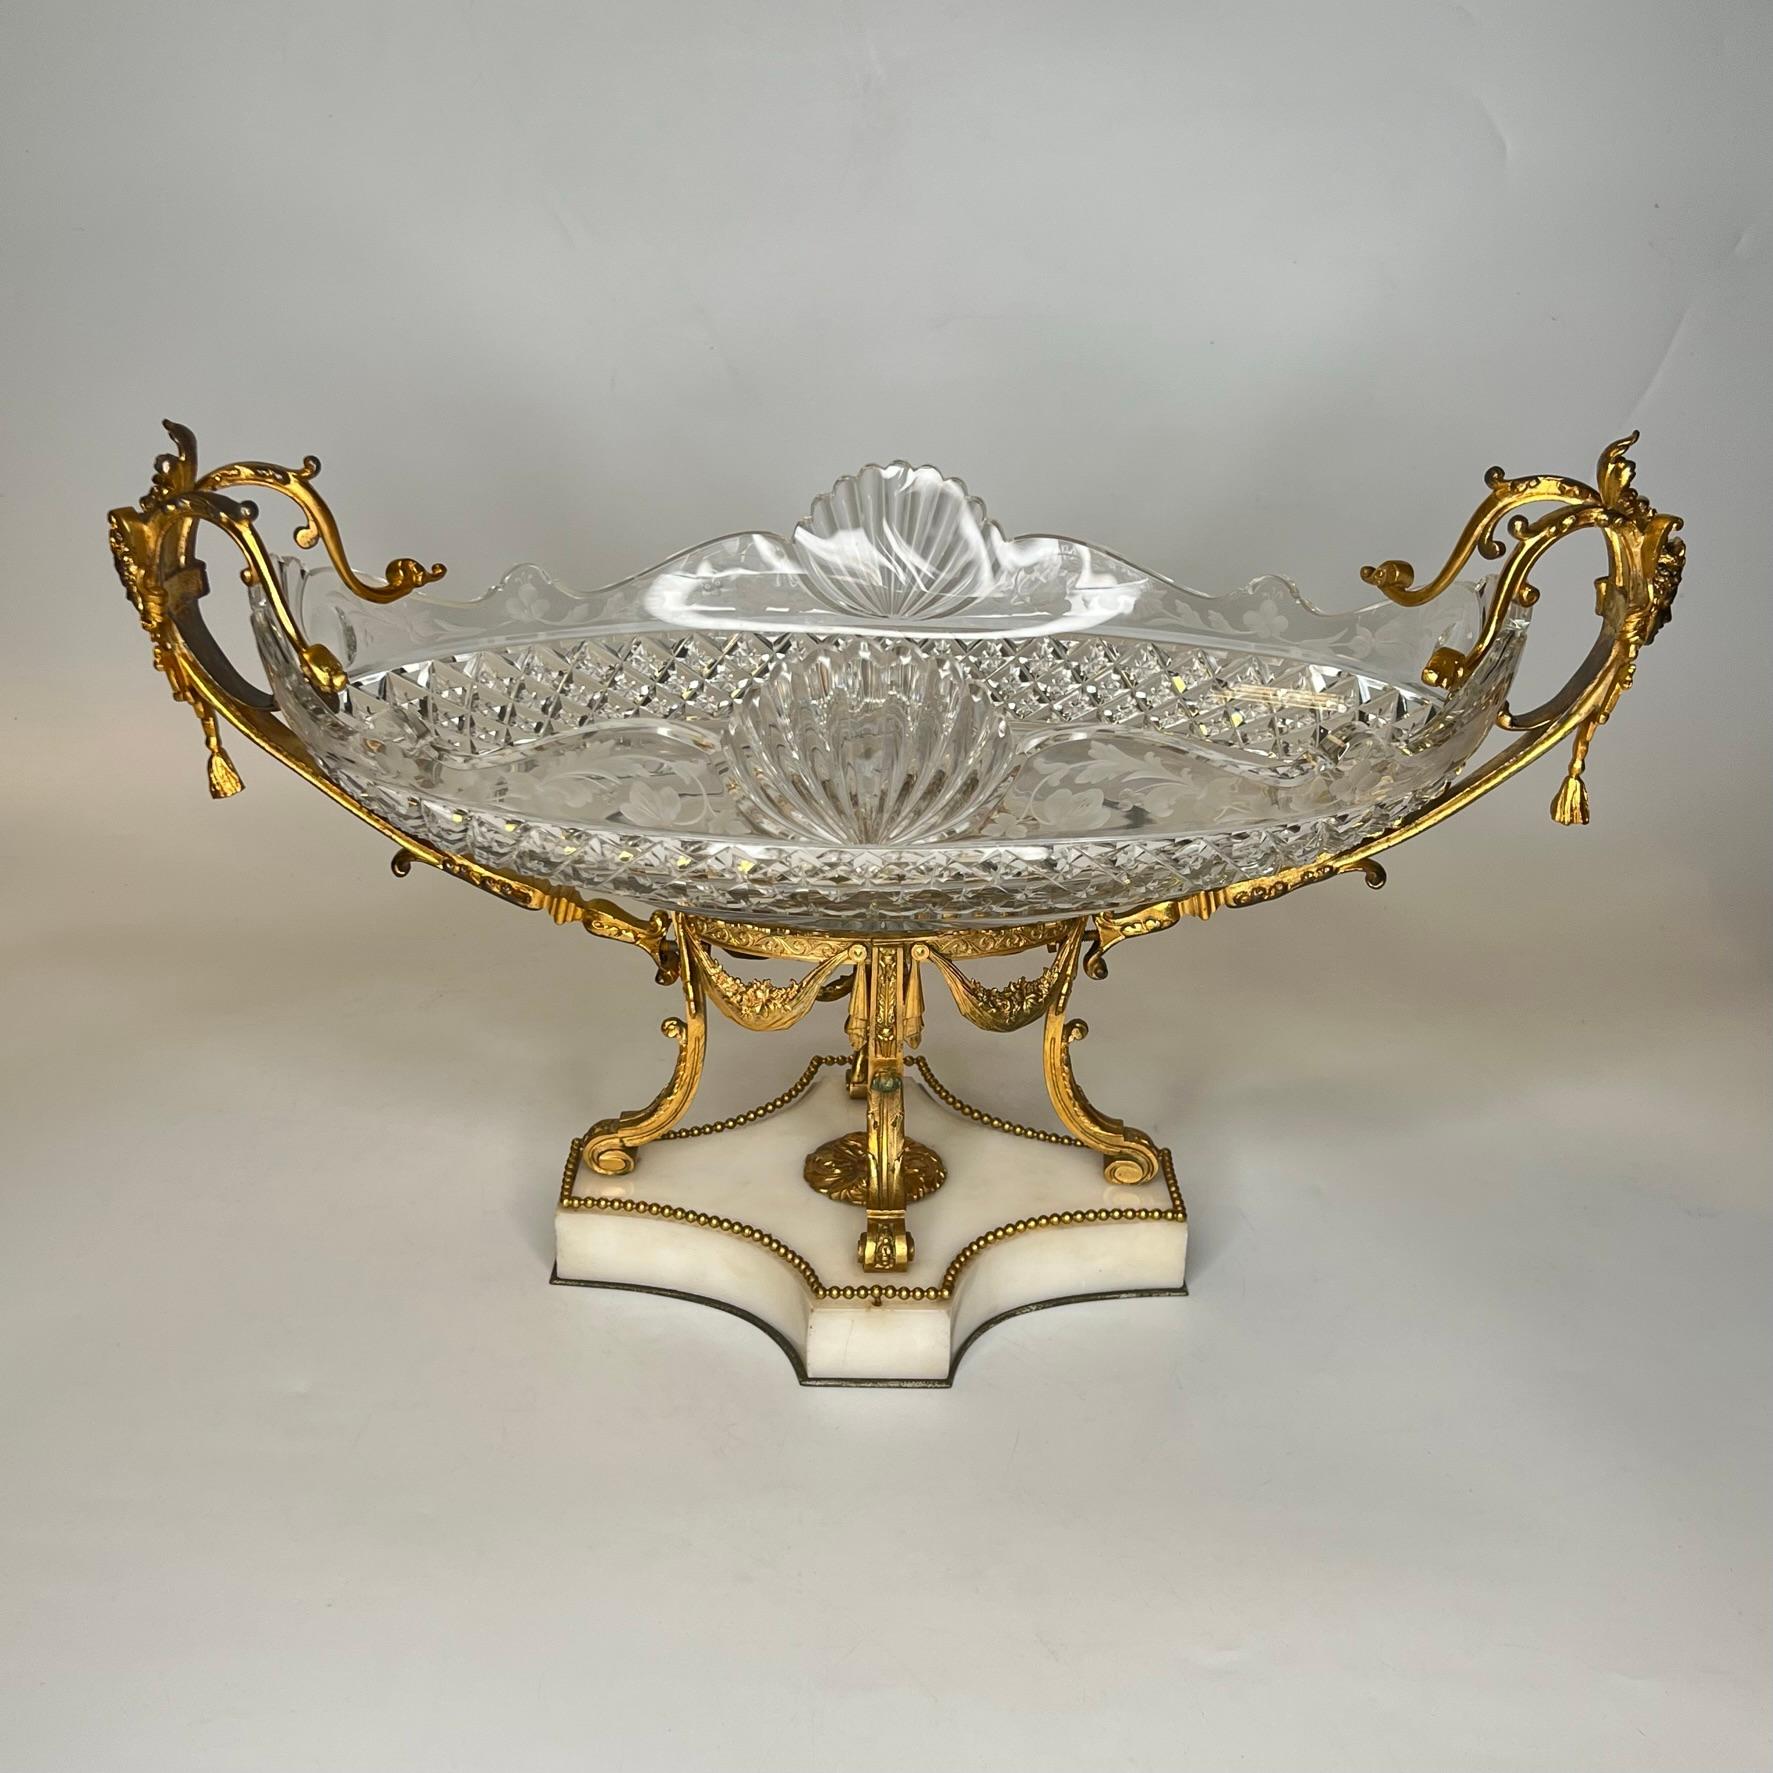 Notre centre de table français, vers 1880, comprend un grand bol en verre de forme ovale délicatement taillé avec des motifs de diamants et de coquillages et gravé de motifs floraux sur les côtés, ainsi qu'un cadre en bronze doré avec des masques de